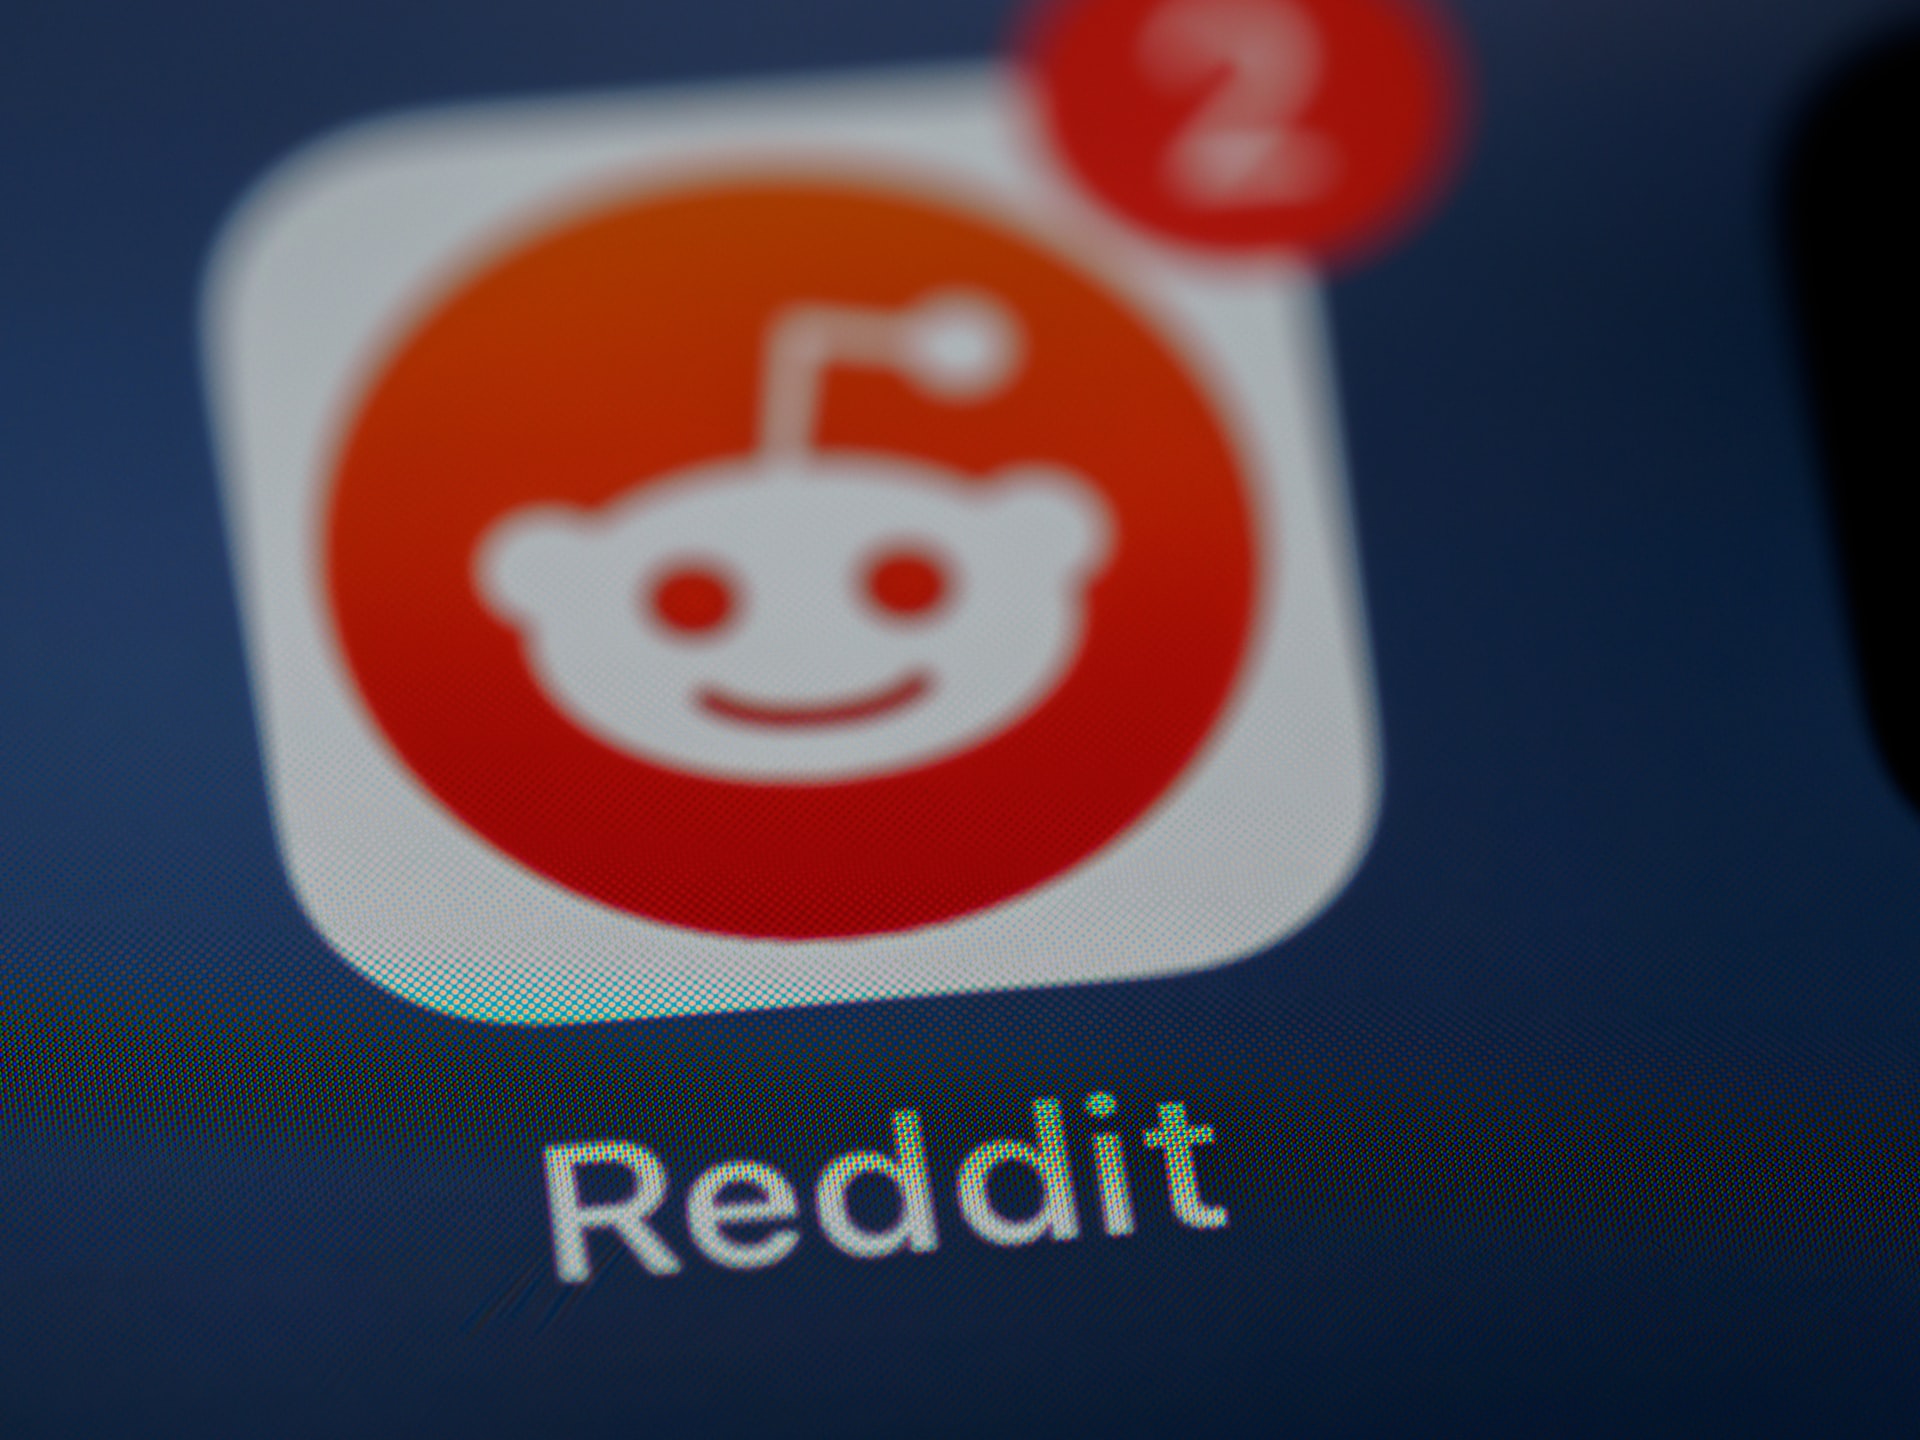 Reddit aposta em vídeos à la TikTok em seu aplicativo mobile